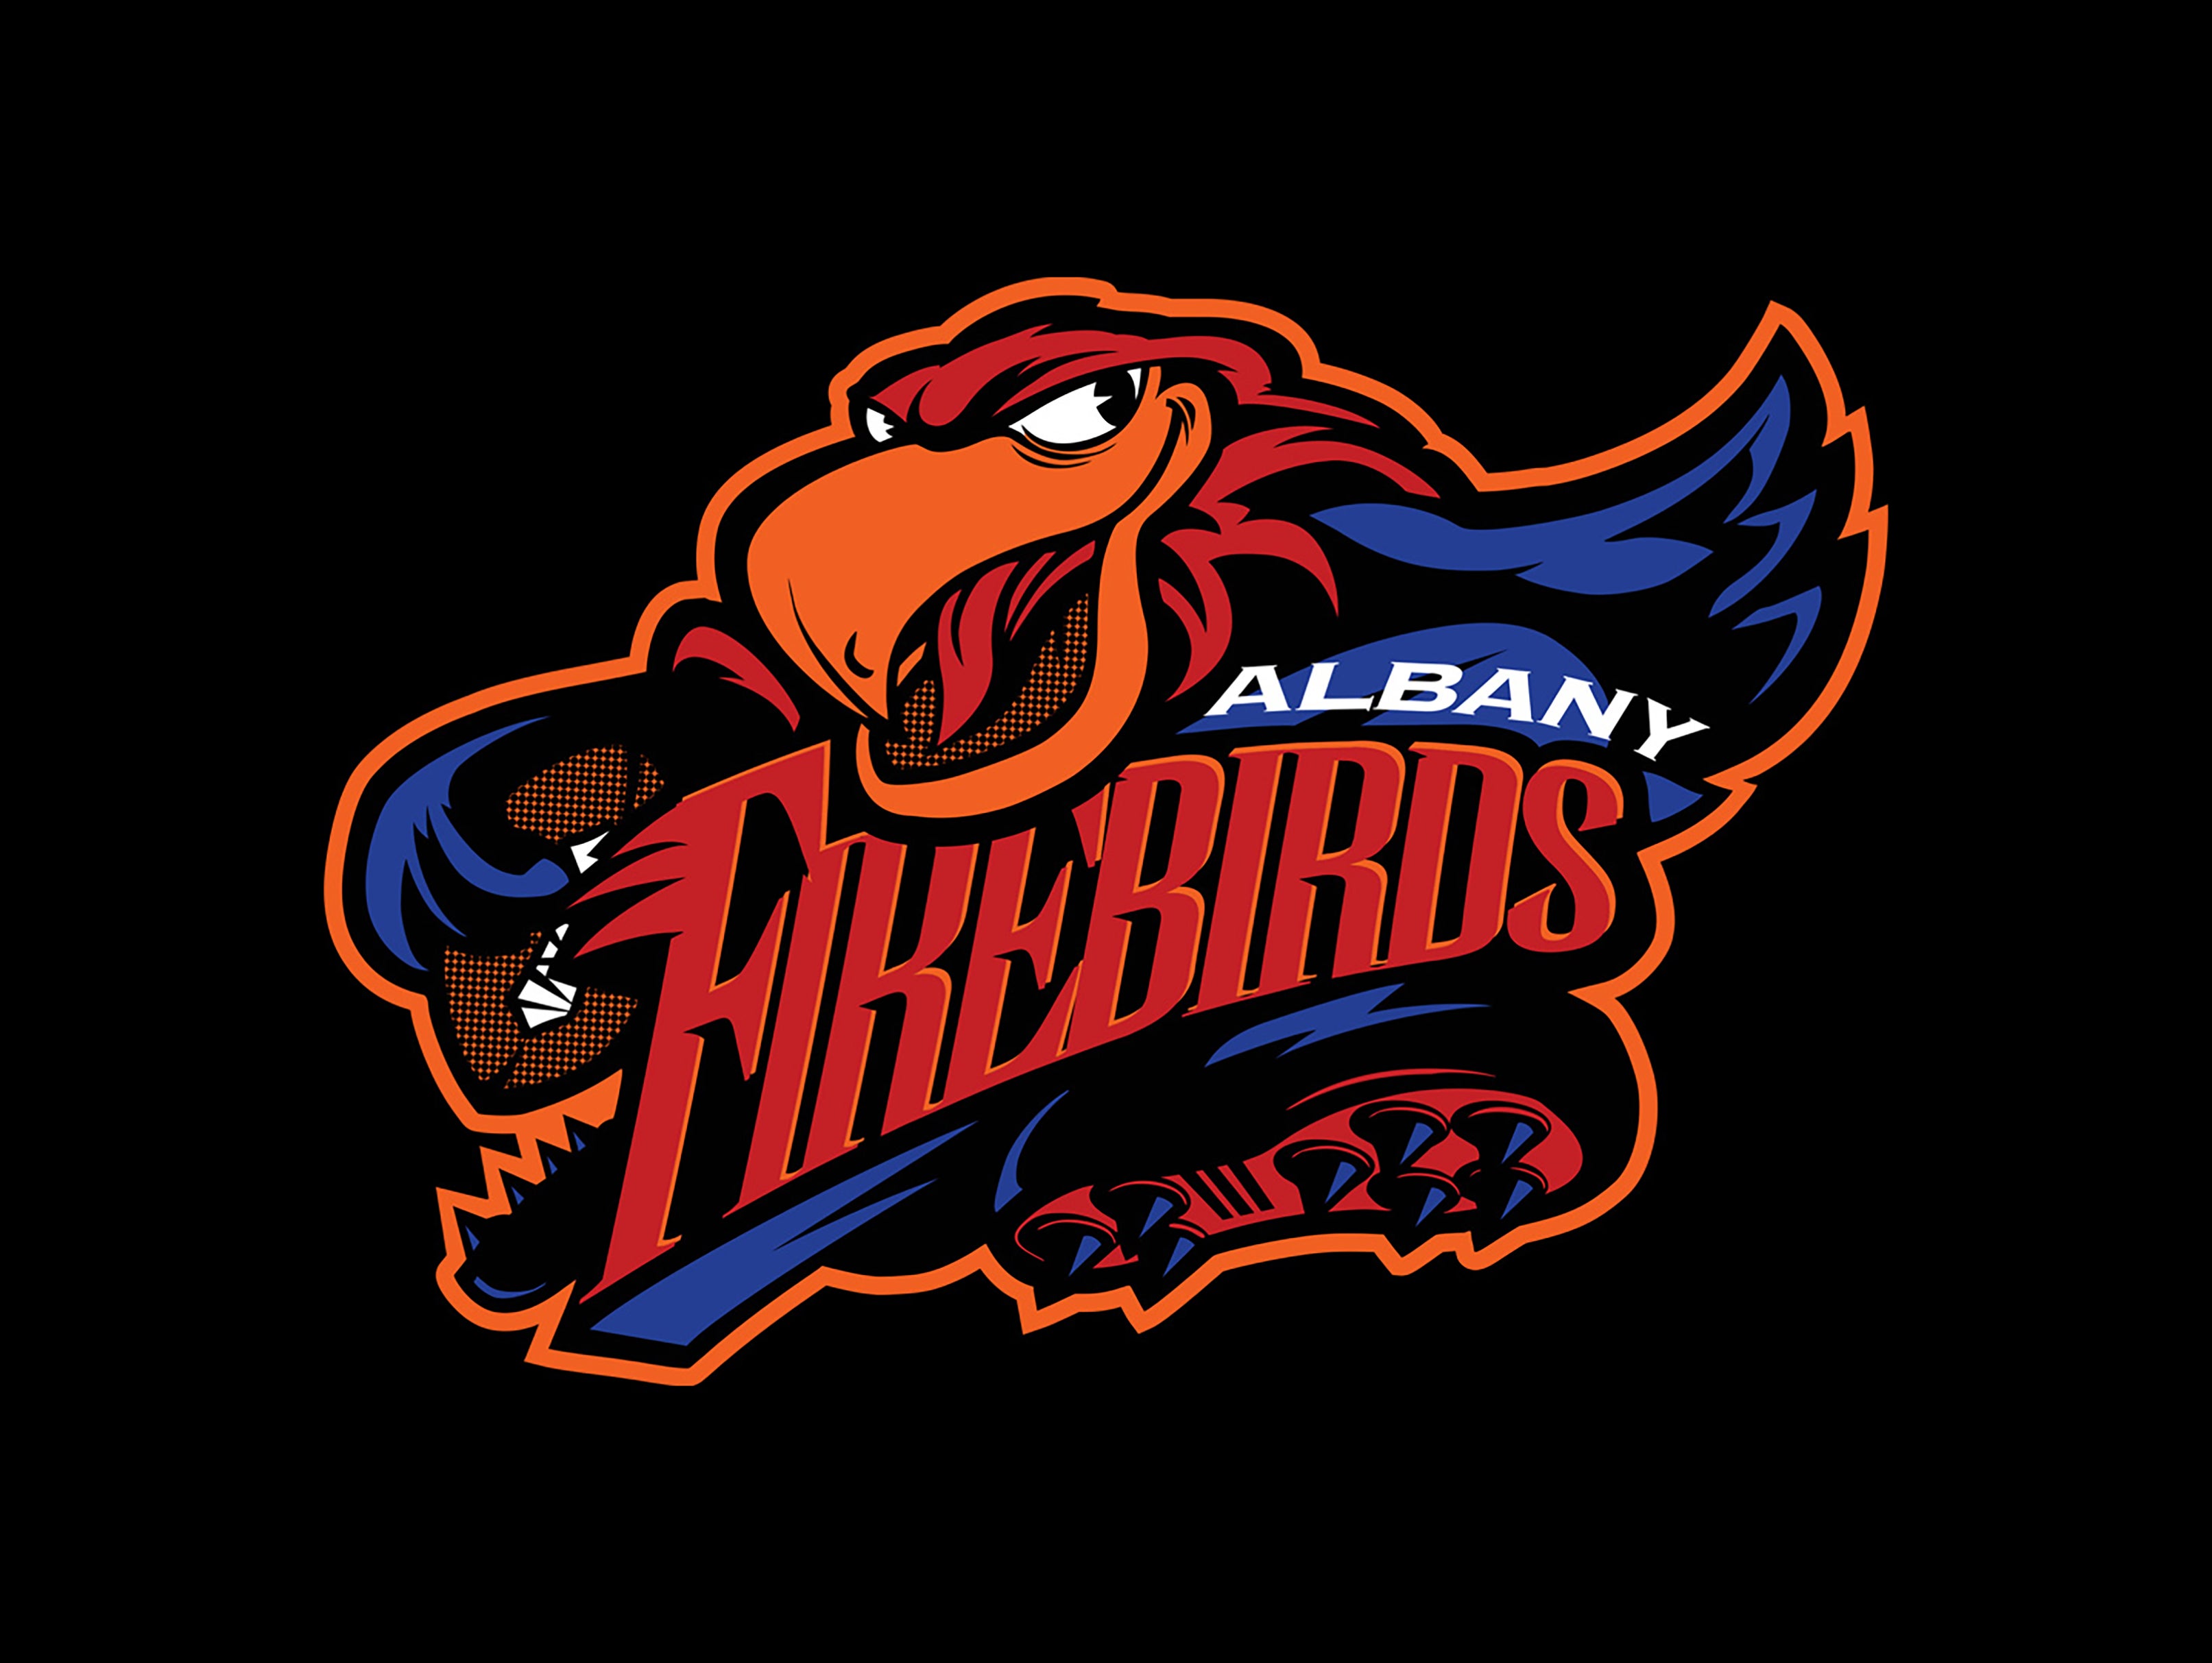 Albany Firebirds vs. Philadelphia Soul at MVP Arena